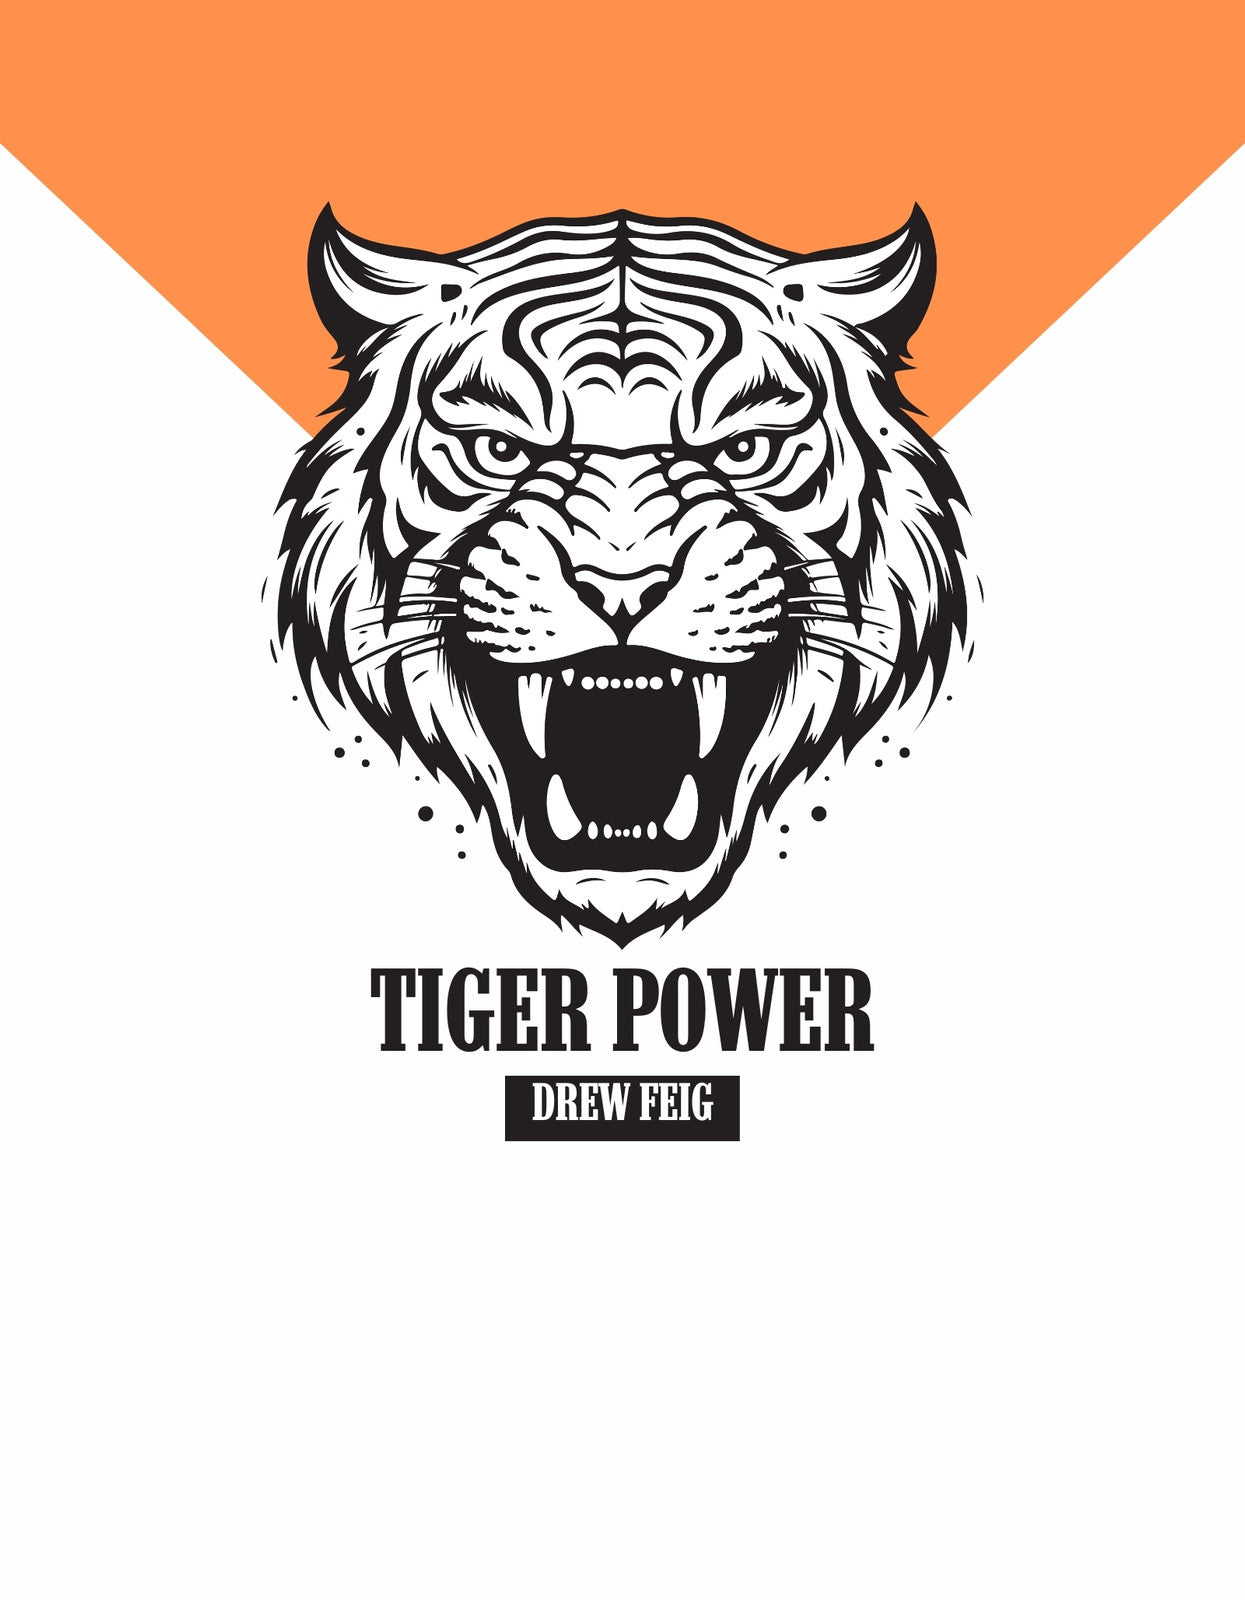 Egy vad és energikus tigris fejét ábrázolja a kép, szinte érezhető a nyers erő, amit sugároz. A tigris felnyitott szájjal ordít, dinamikus vonalvezetéssel, letisztult fekete és fehér színekkel. 